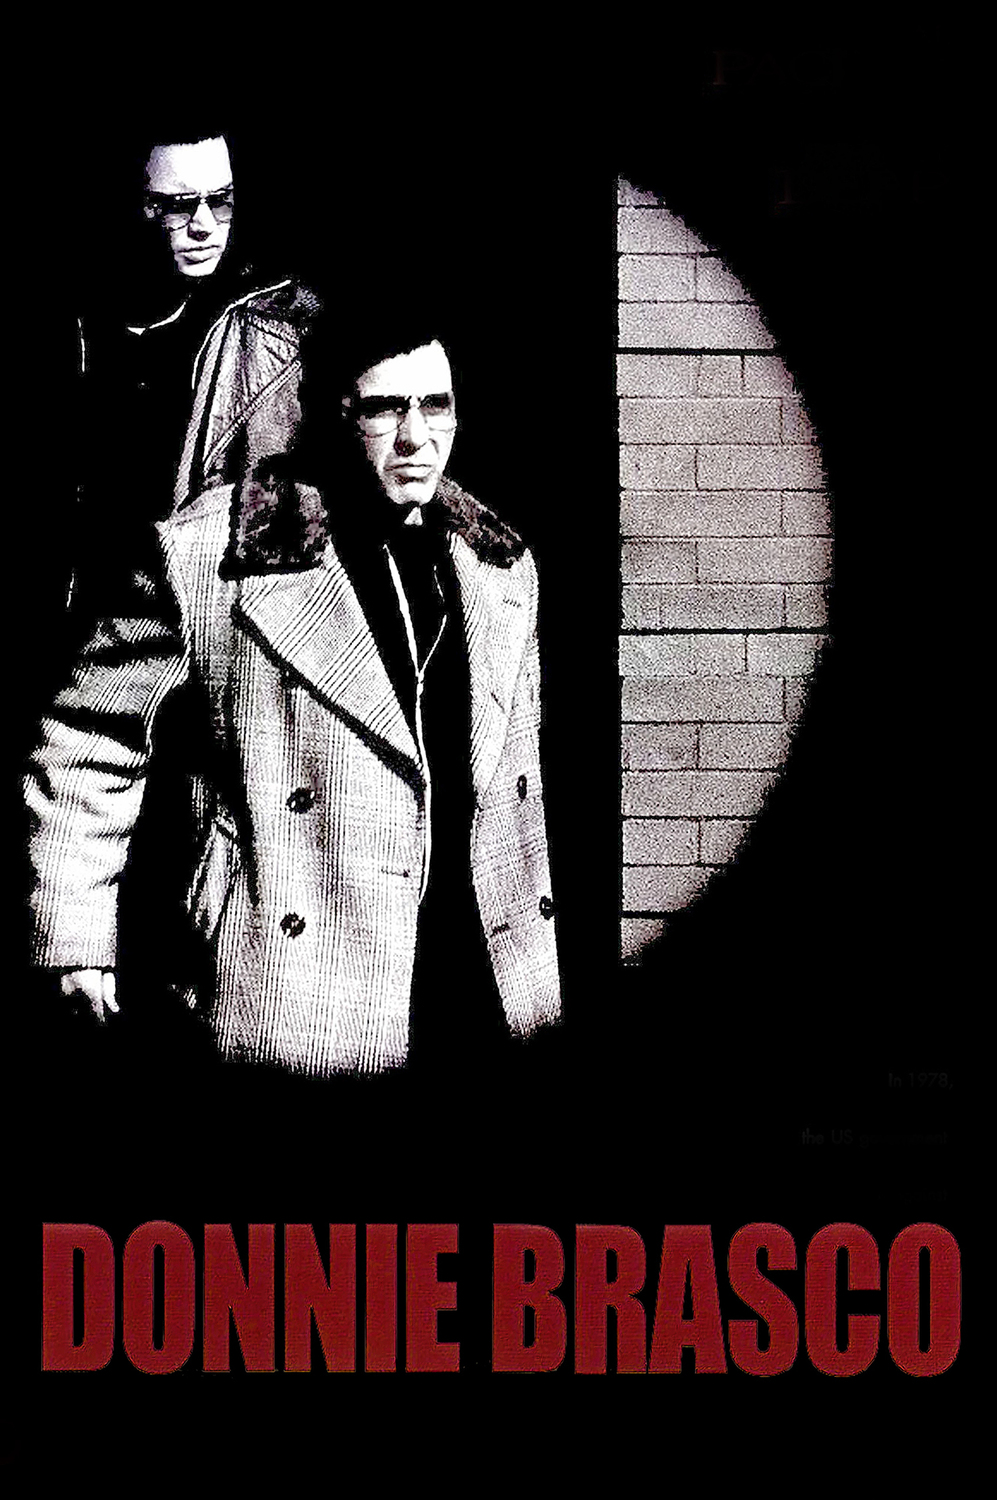 Krycí jméno Donnie Brasco | Fandíme filmu